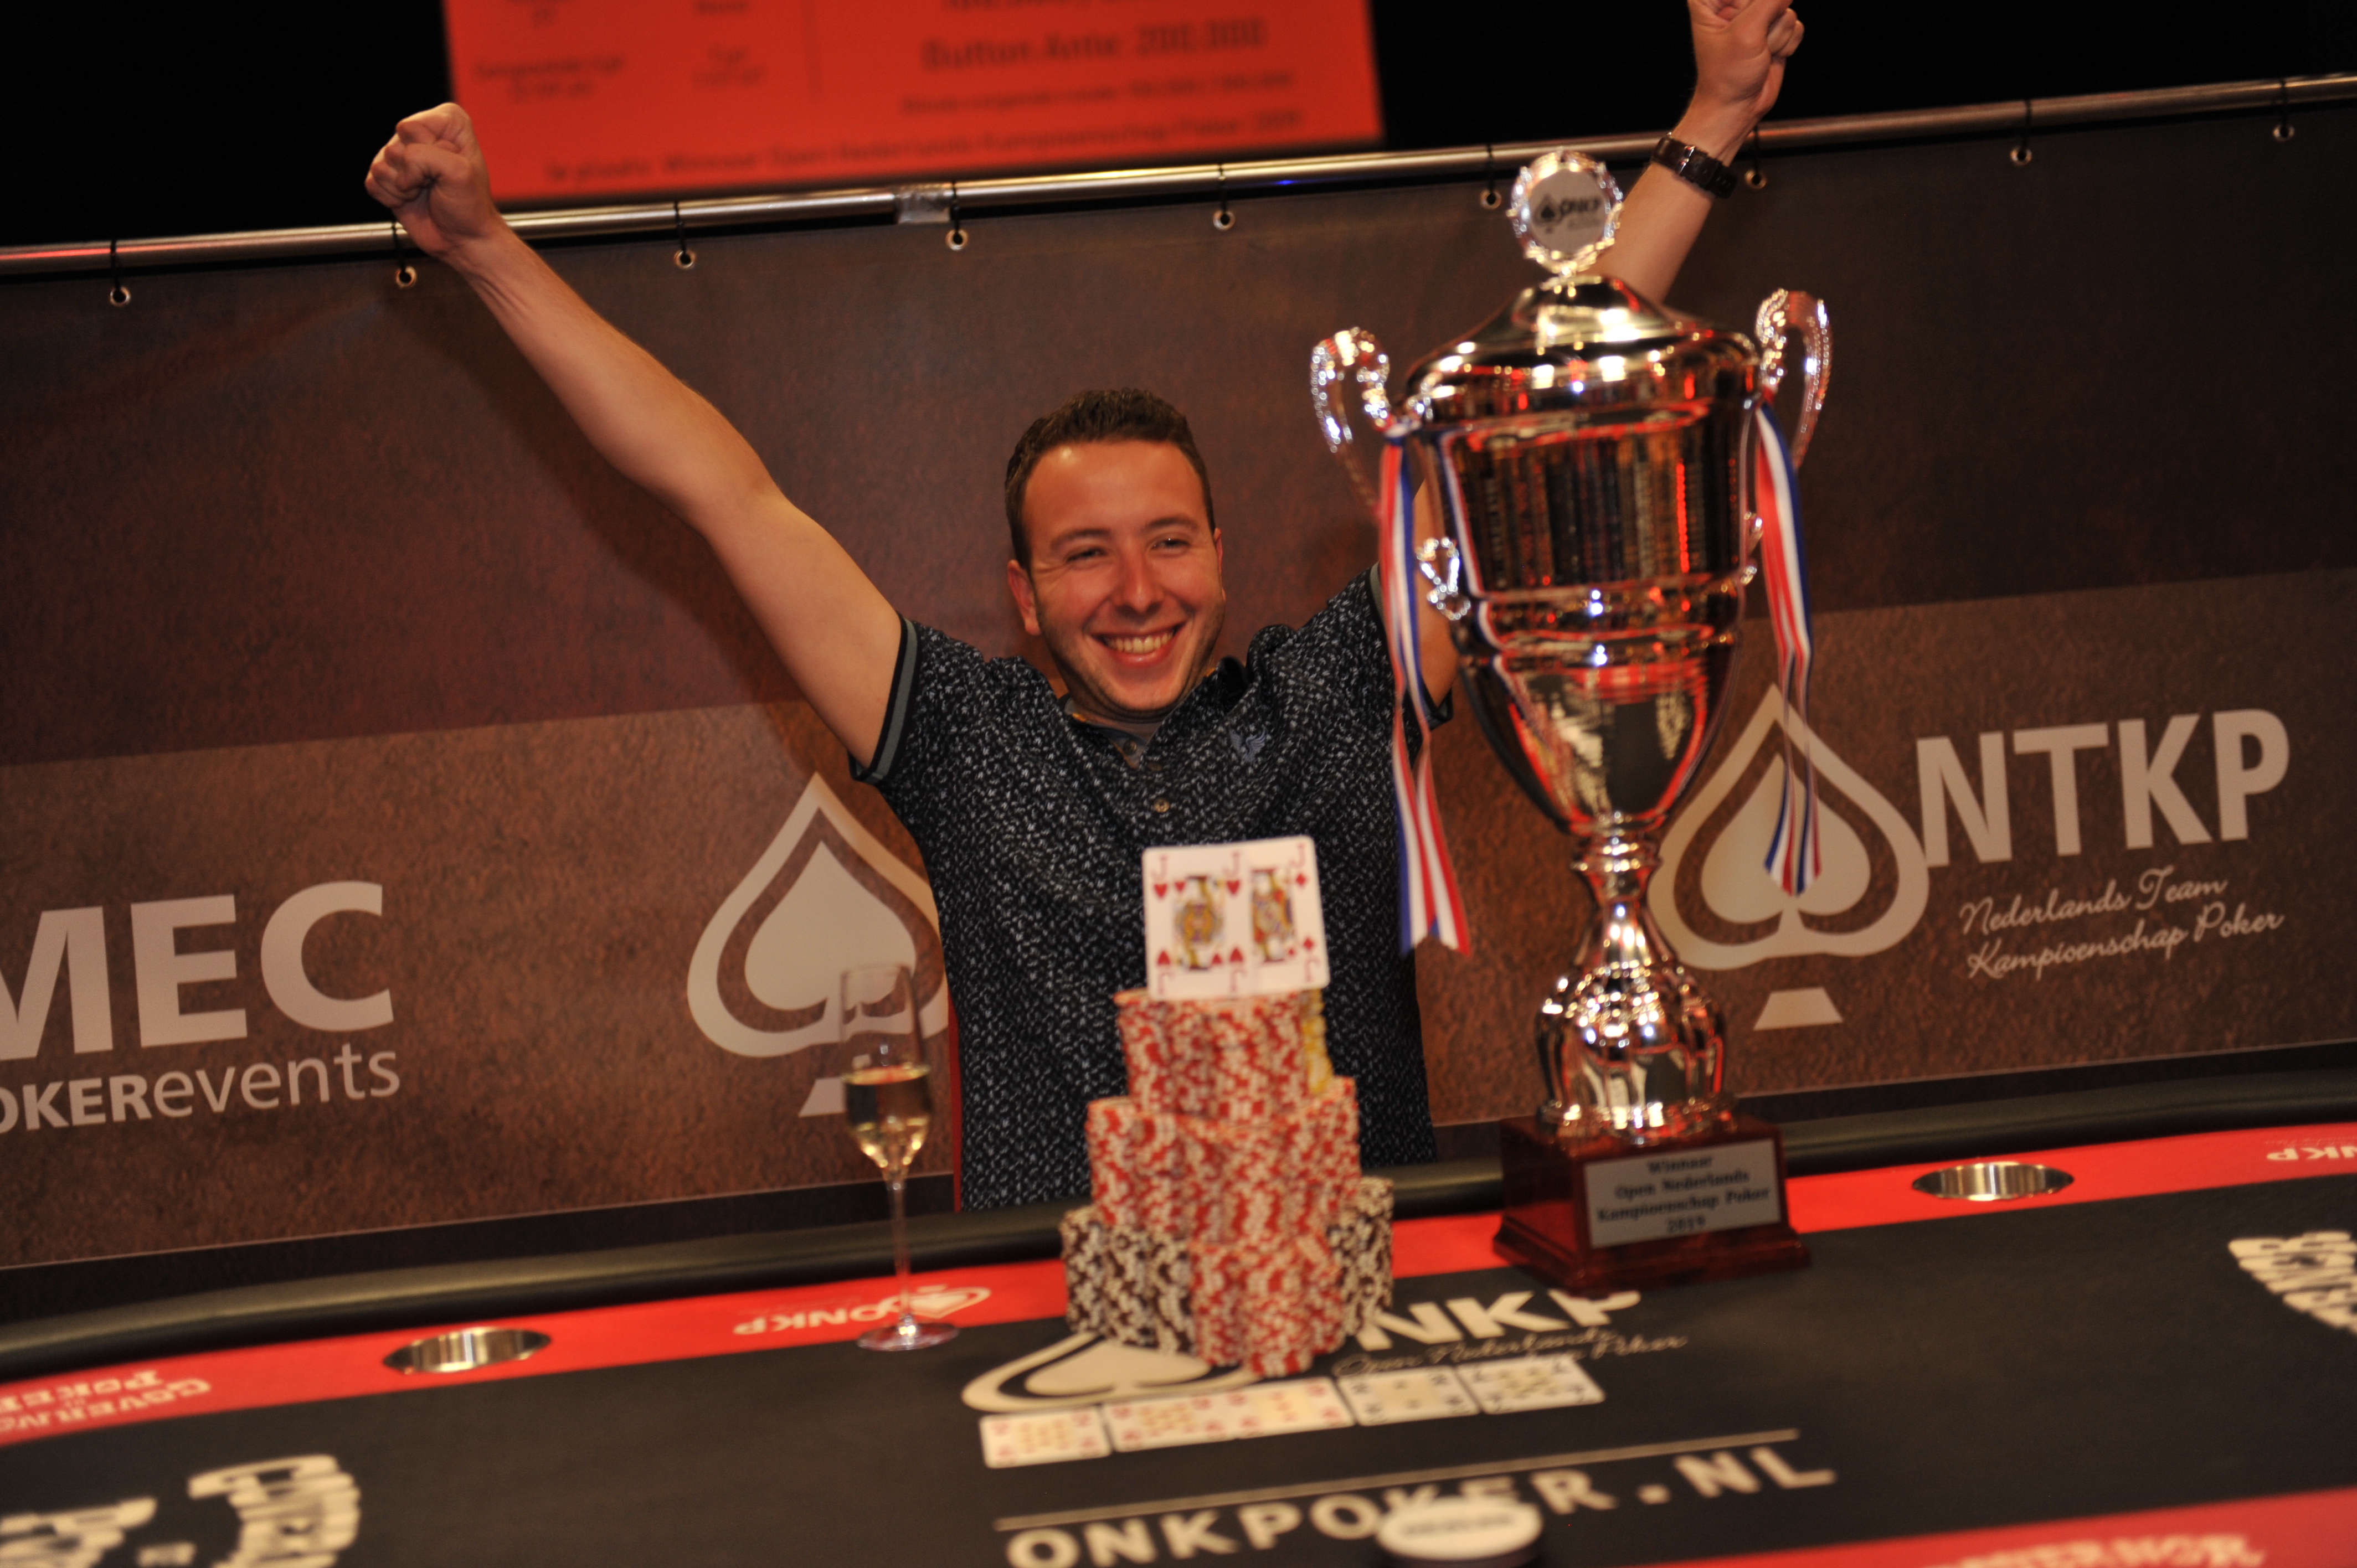 Martin van Meel wint het Open Nederlands Kampioenschap Poker 2019